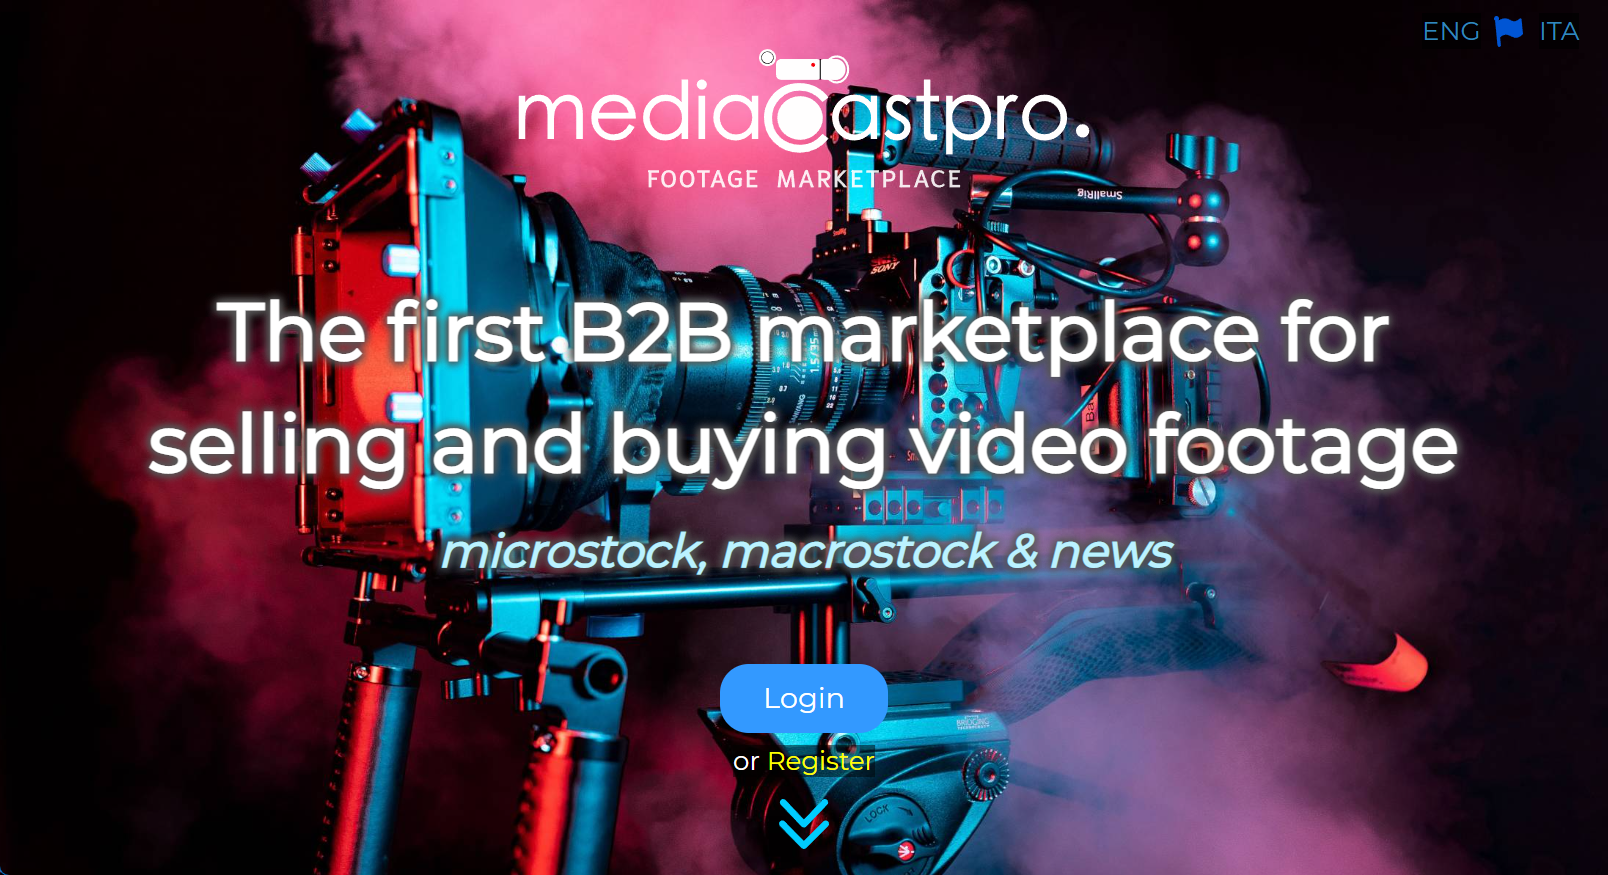 mediaCastpro is online!